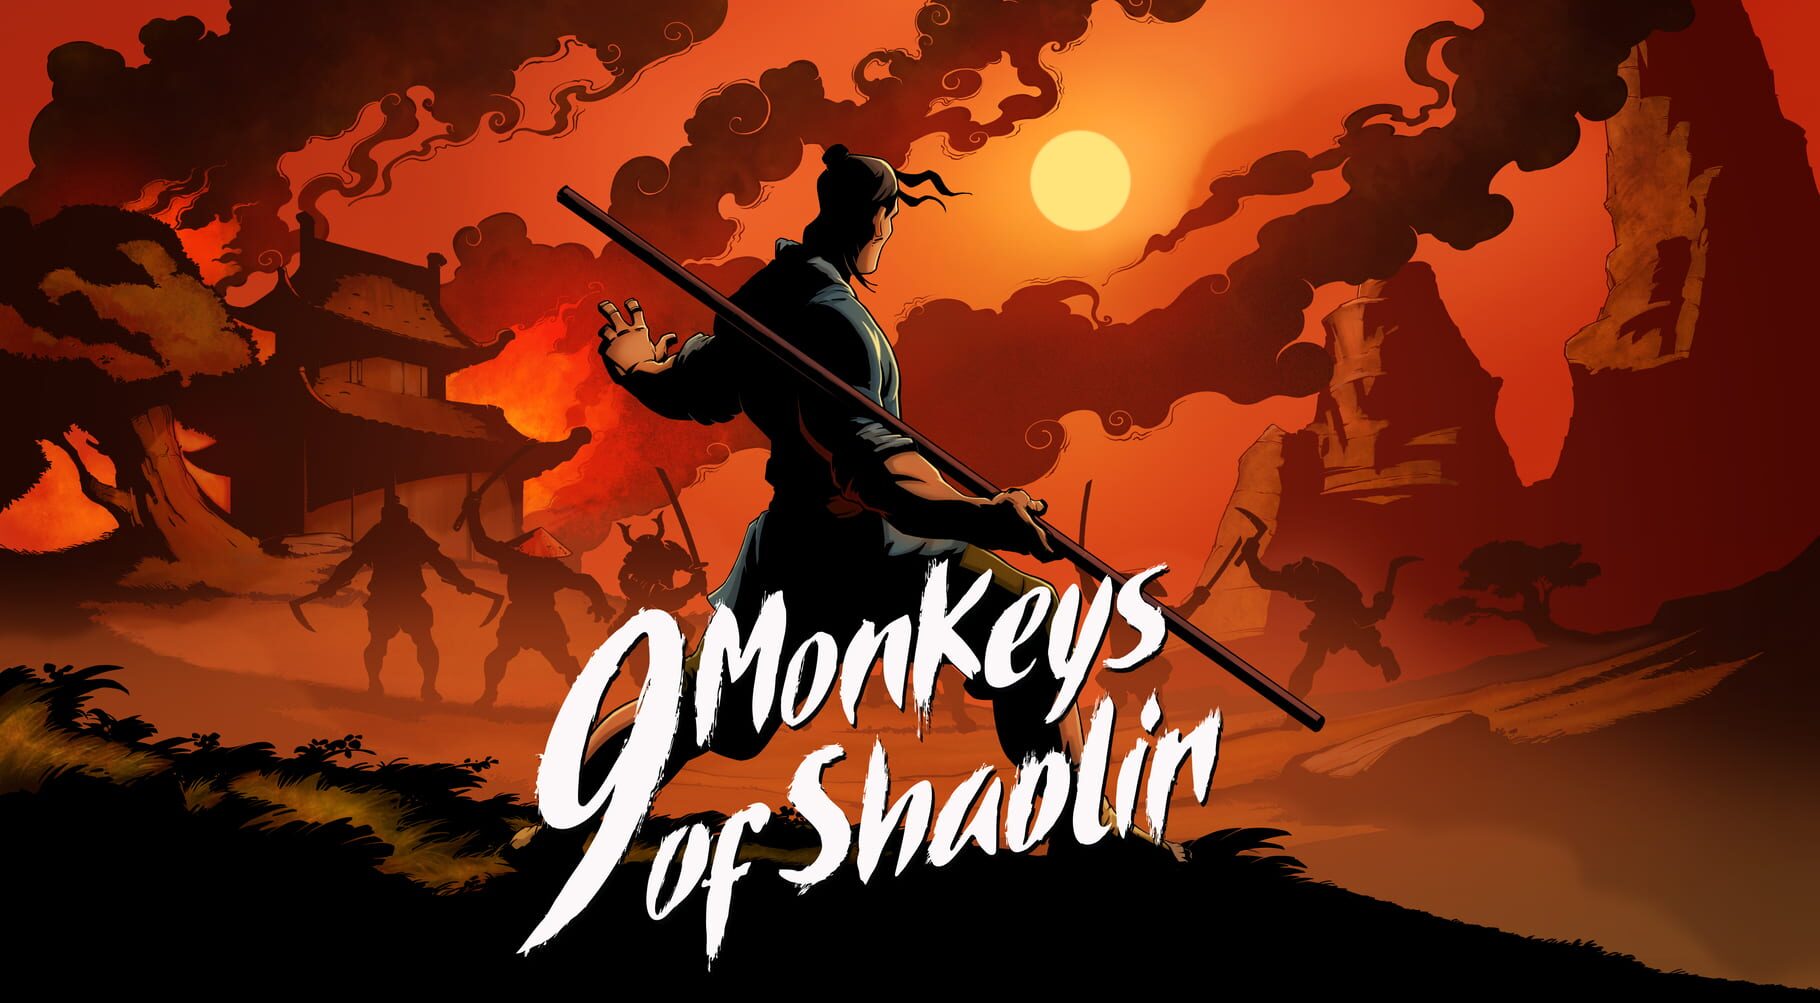 Arte - 9 Monkeys of Shaolin